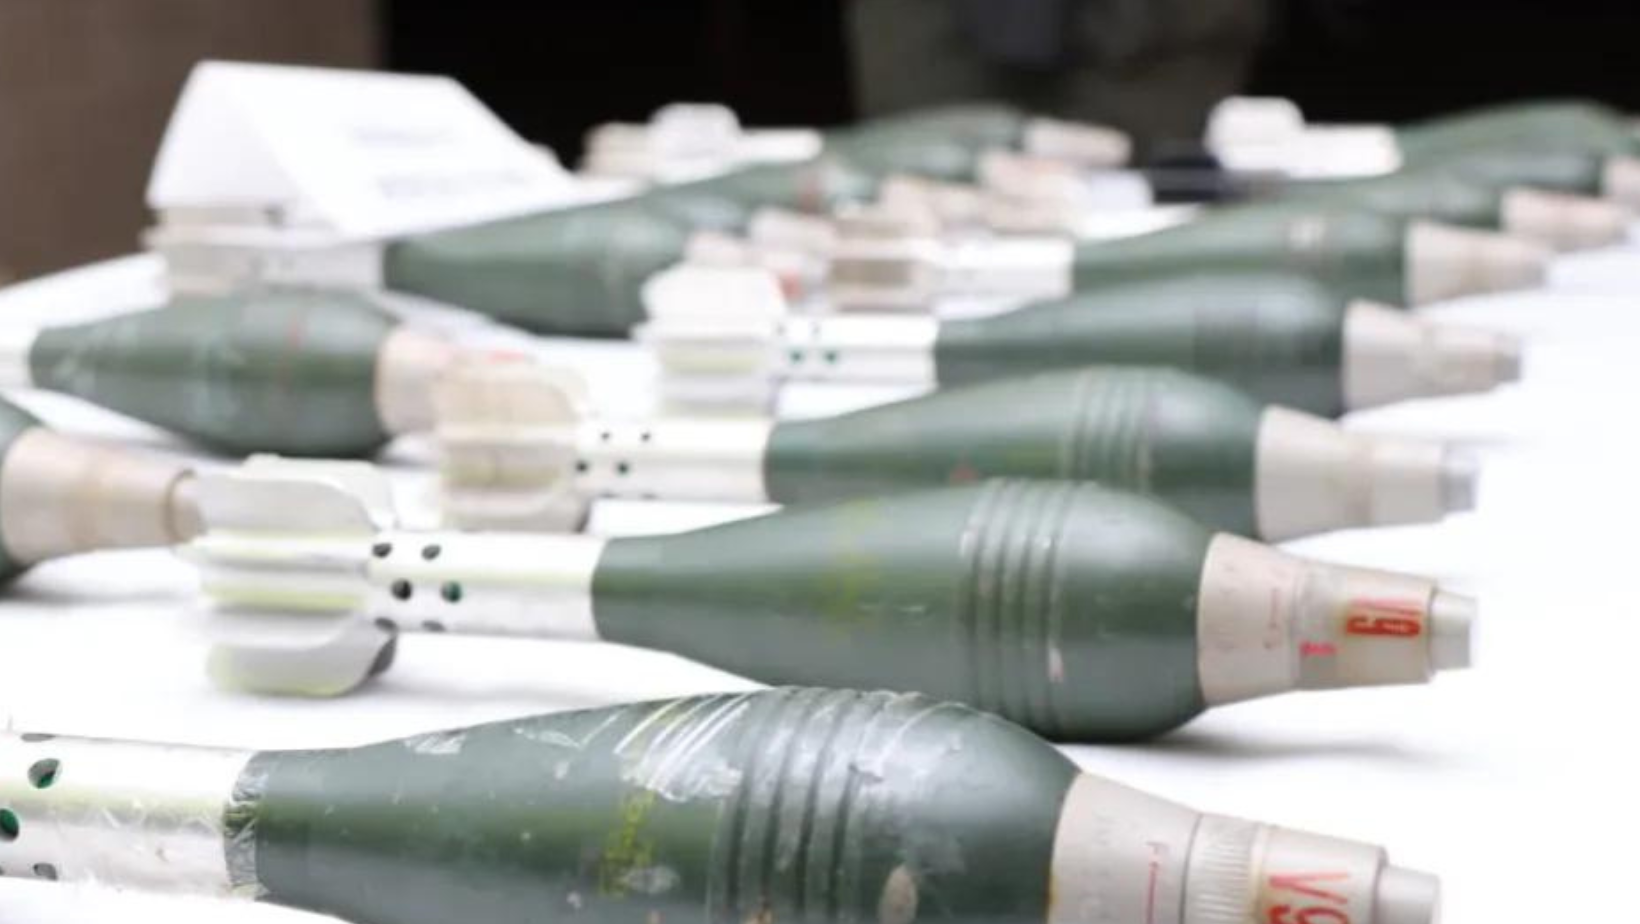 18 granadas mortero halladas en empresa de encomiendas de Ibagué